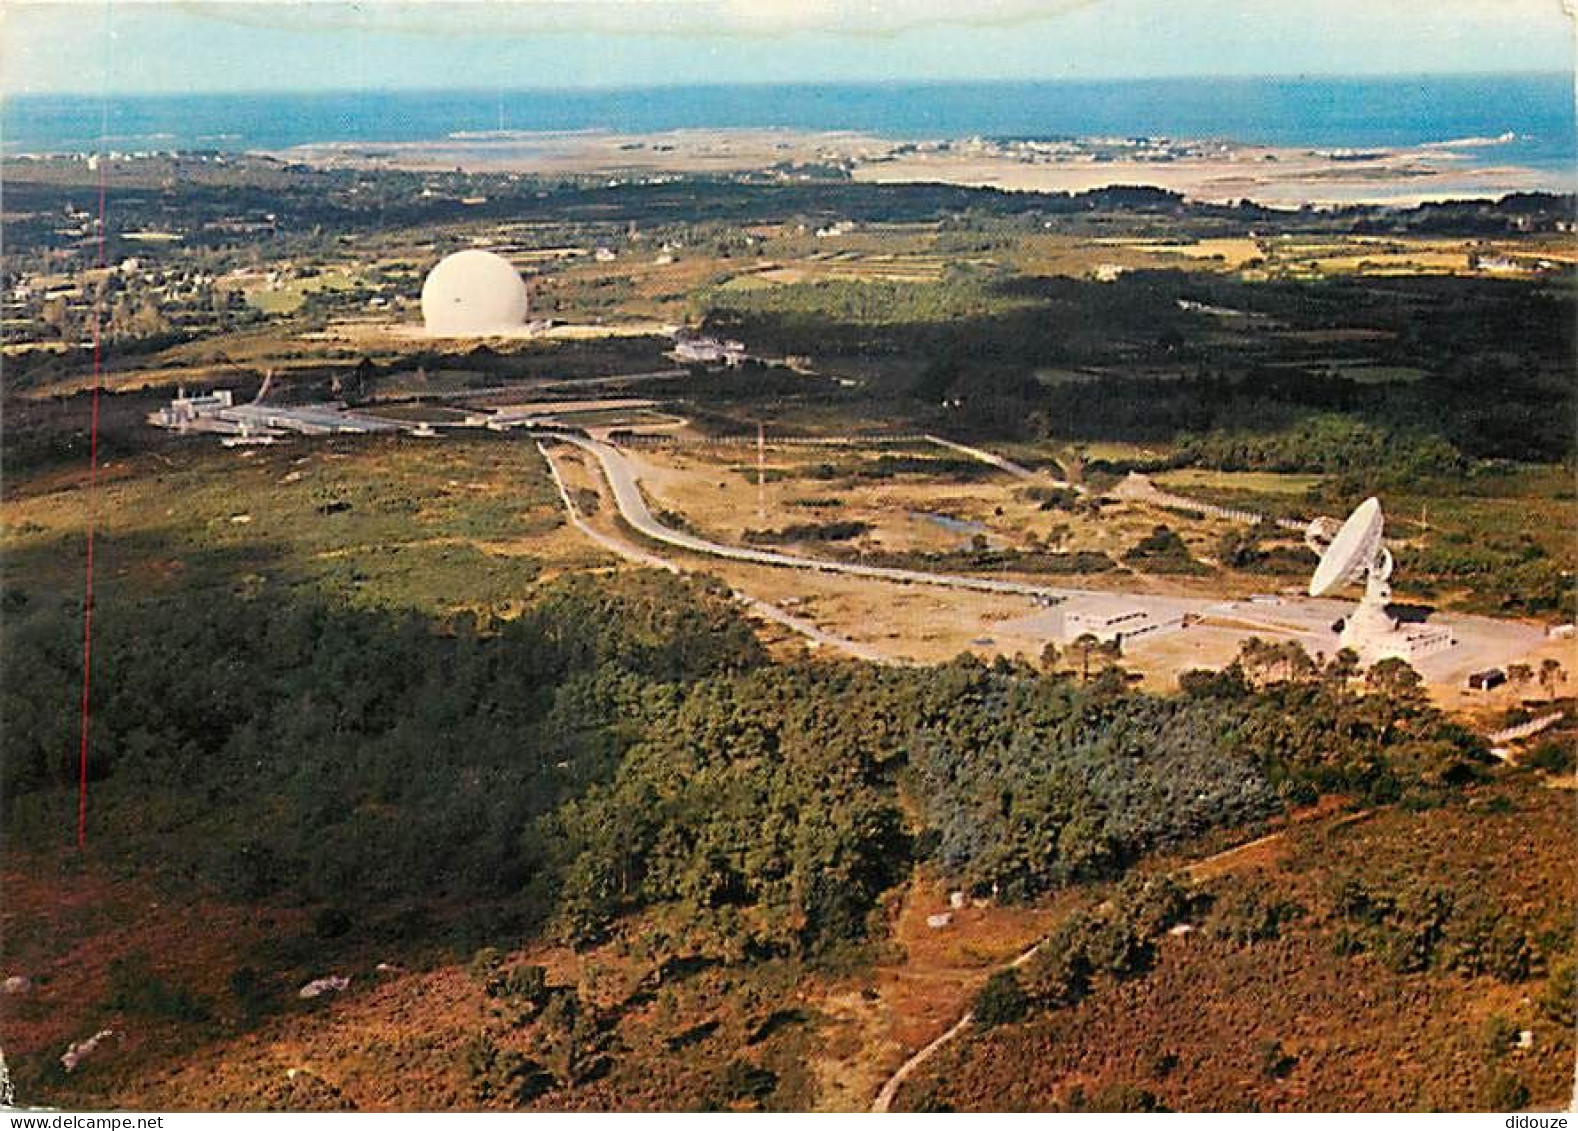 22 - Pleumeur-Bodou - Le Centre De Télécommunications Par Satellites - Vue Aérienne Des Antennes - CPM - Voir Scans Rect - Pleumeur-Bodou